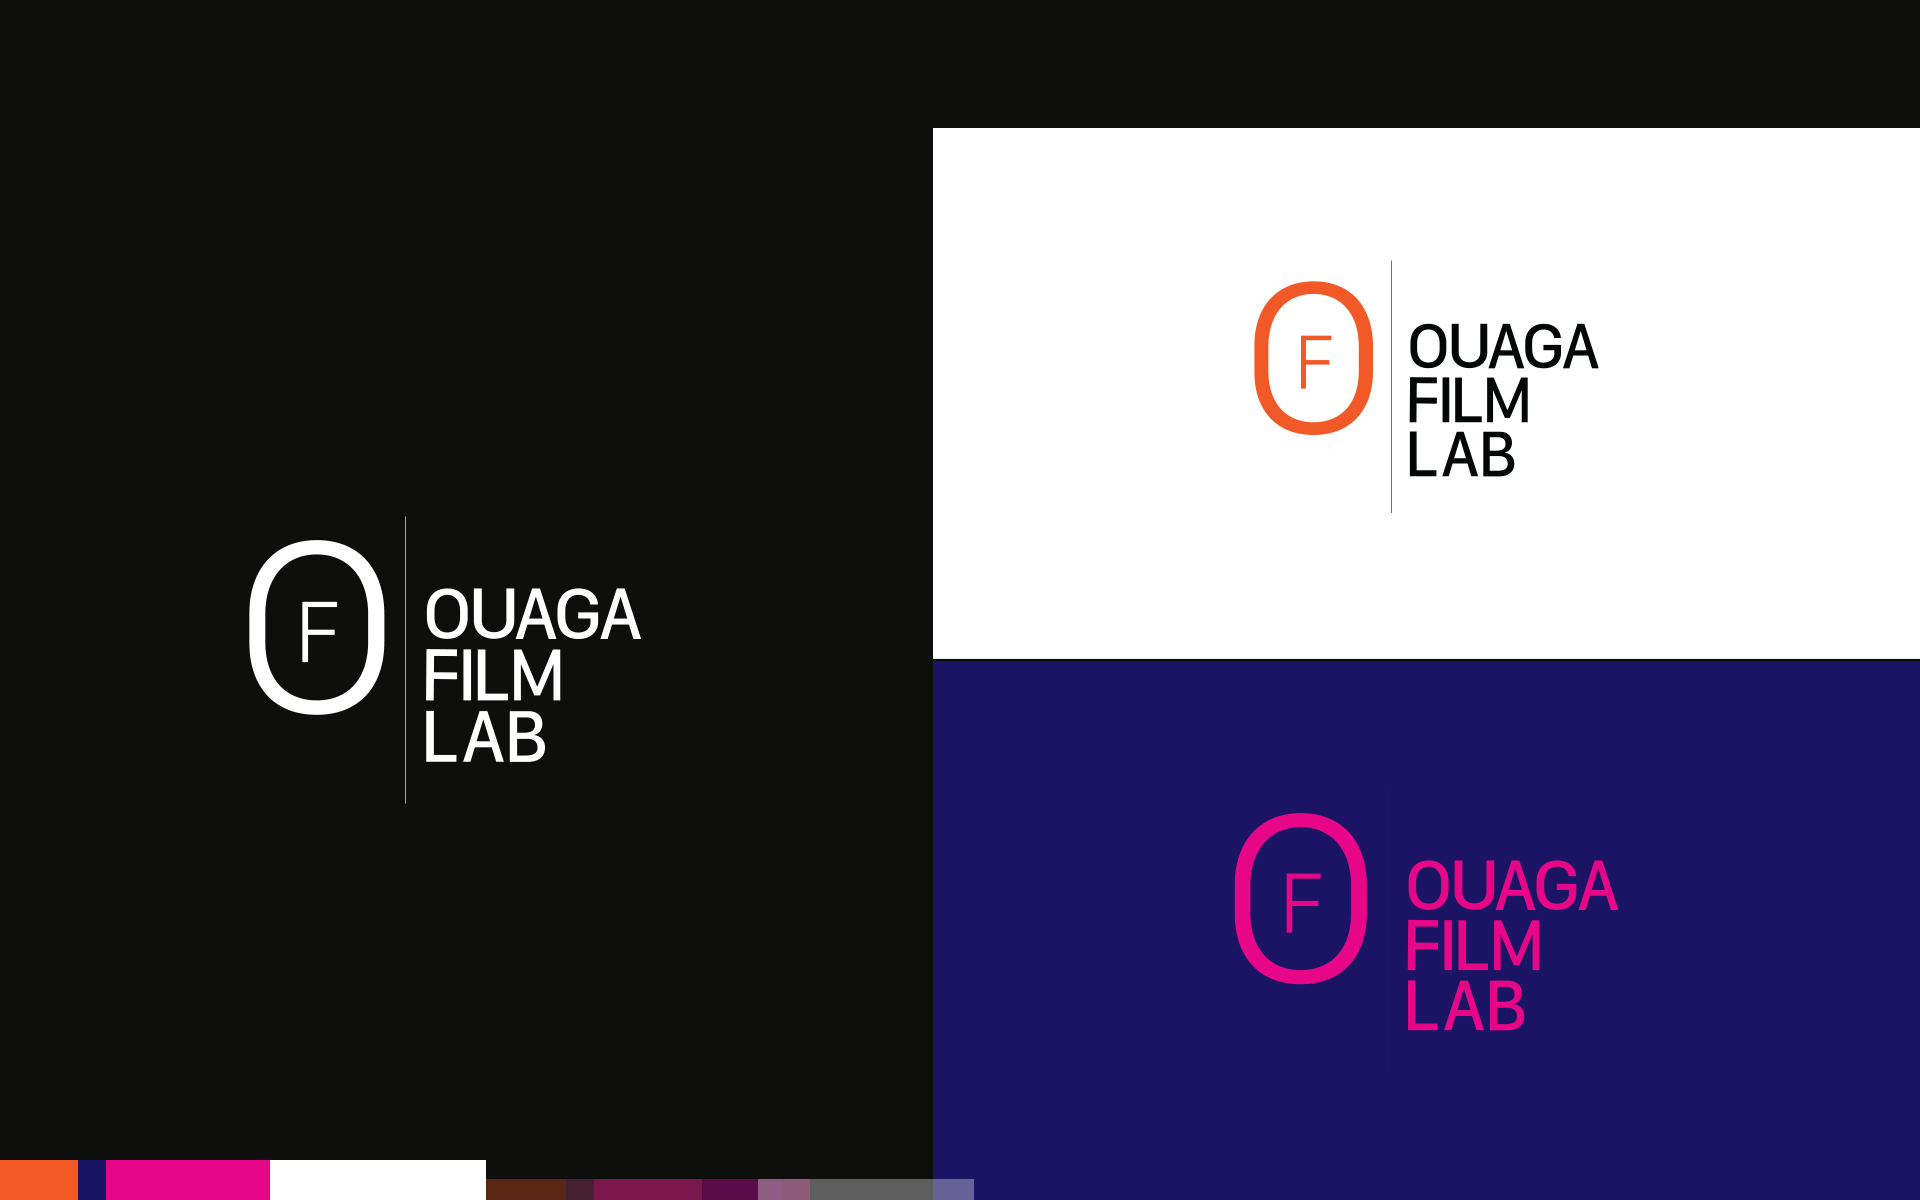 Ouaga Film Lab Corporate design